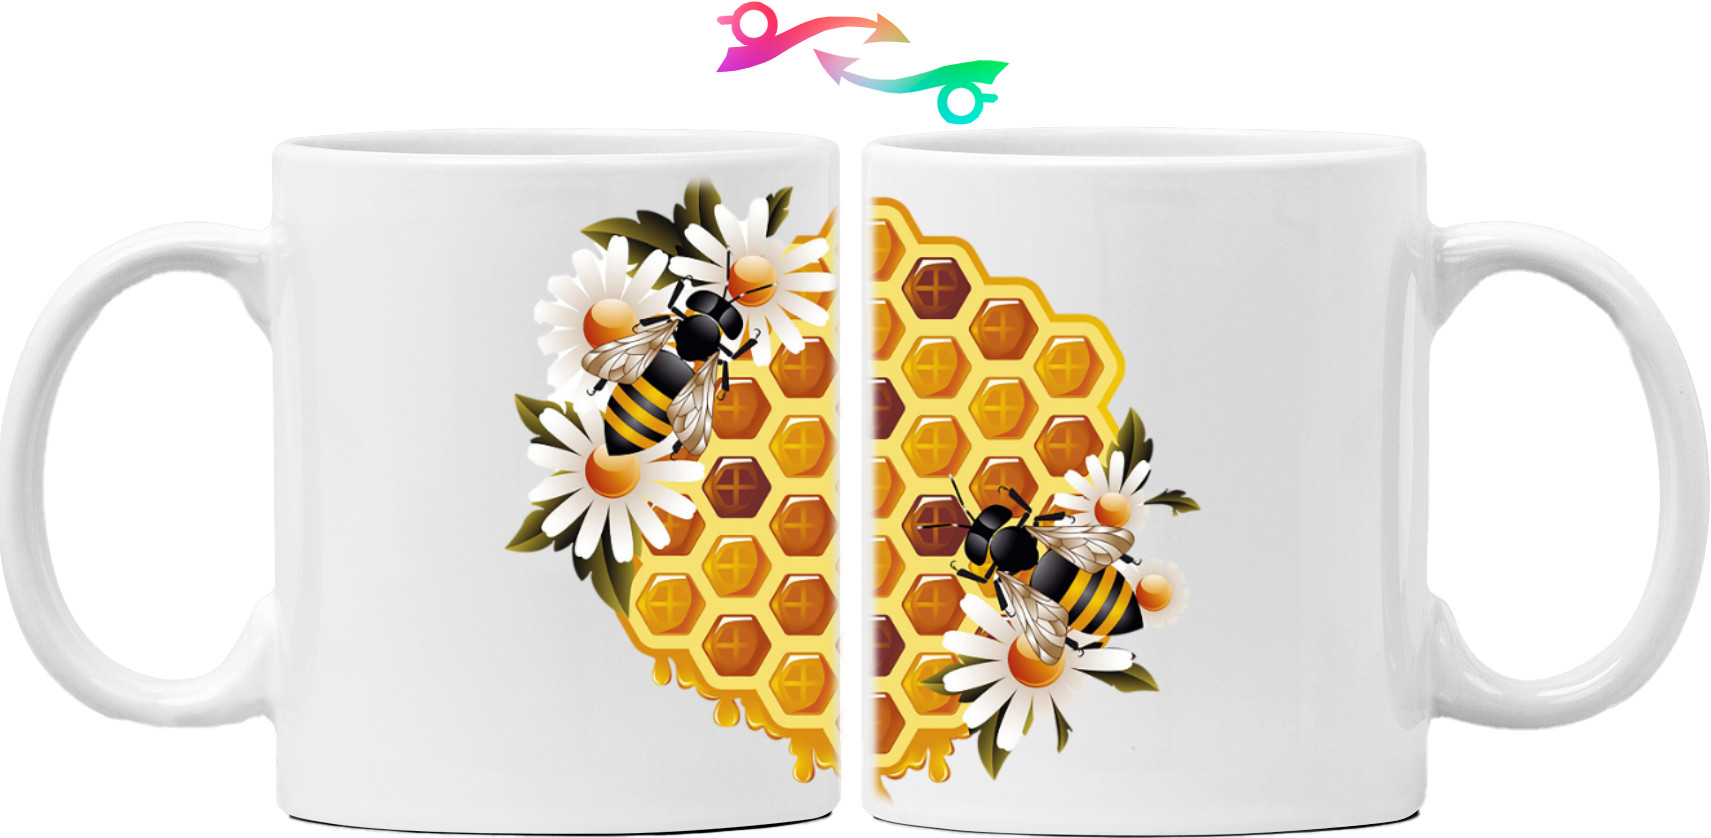 пчелі на соті